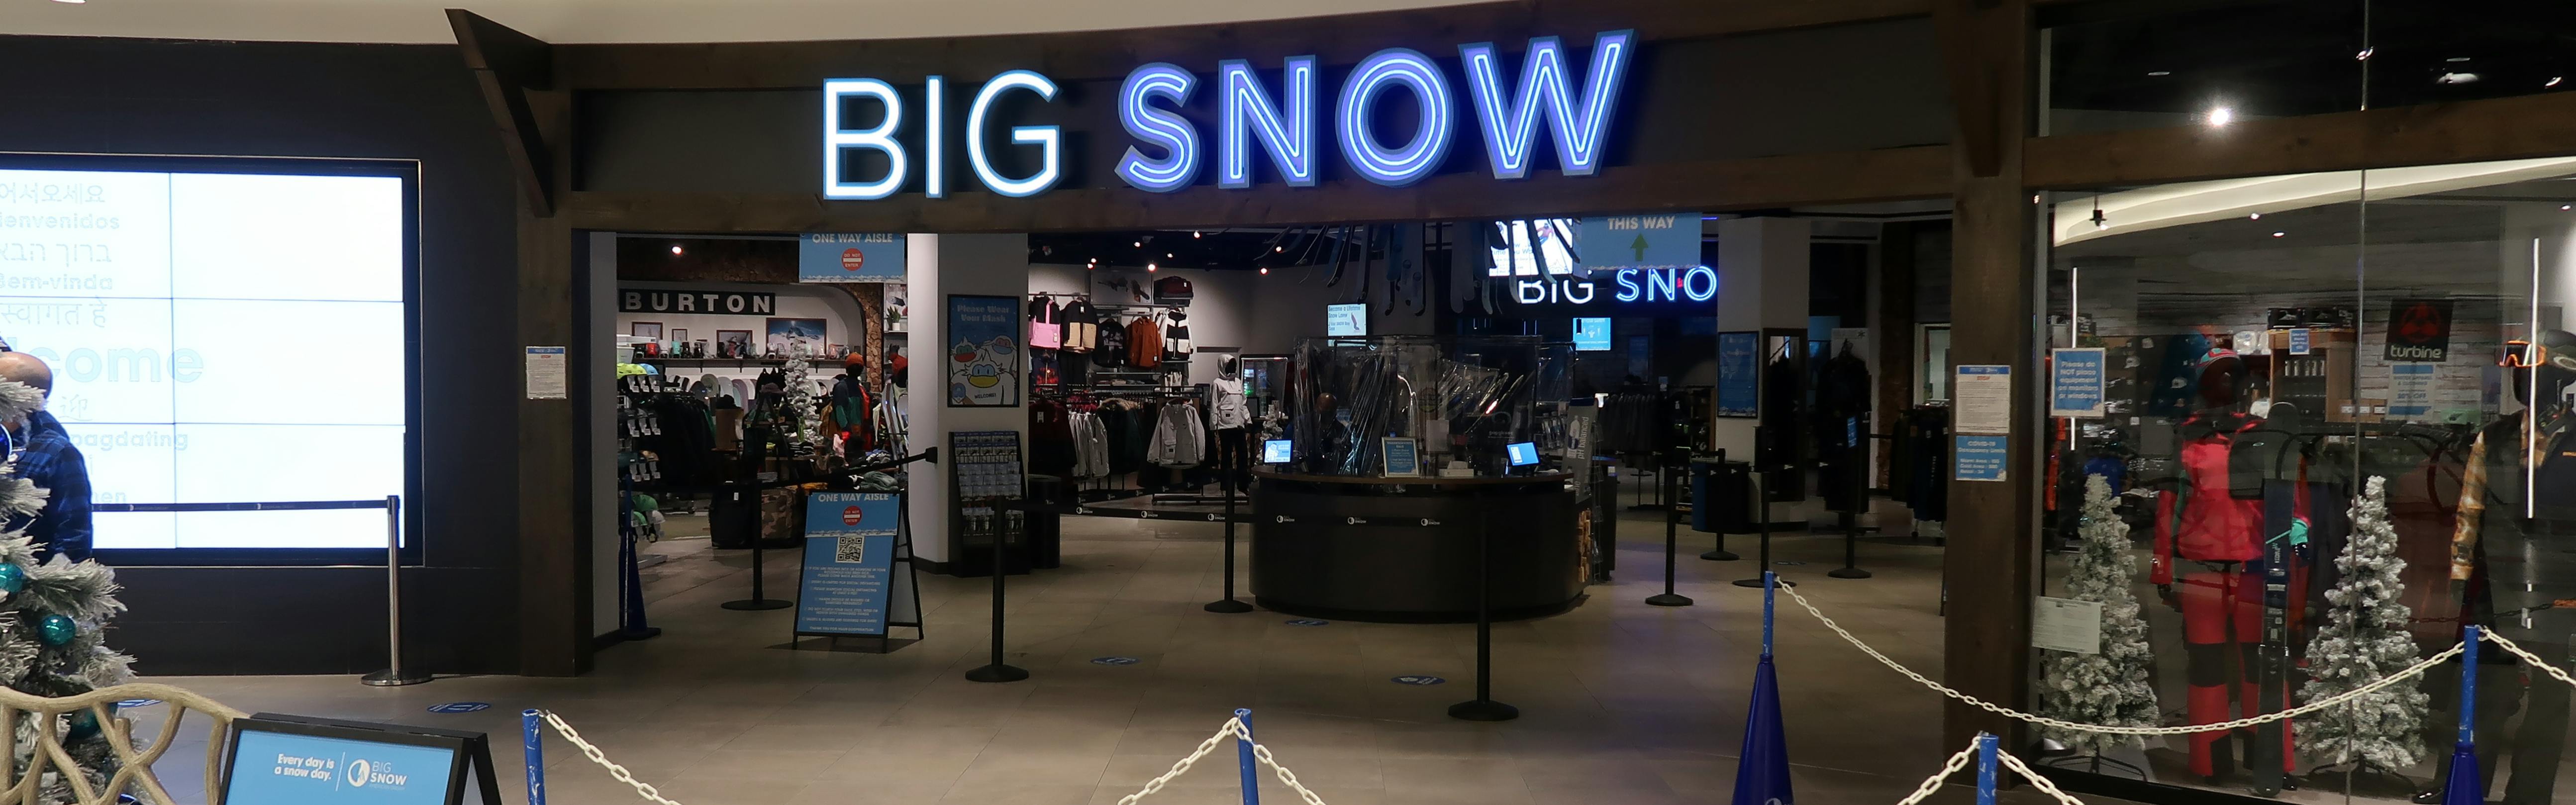 Big Snow American Dream - Wikipedia